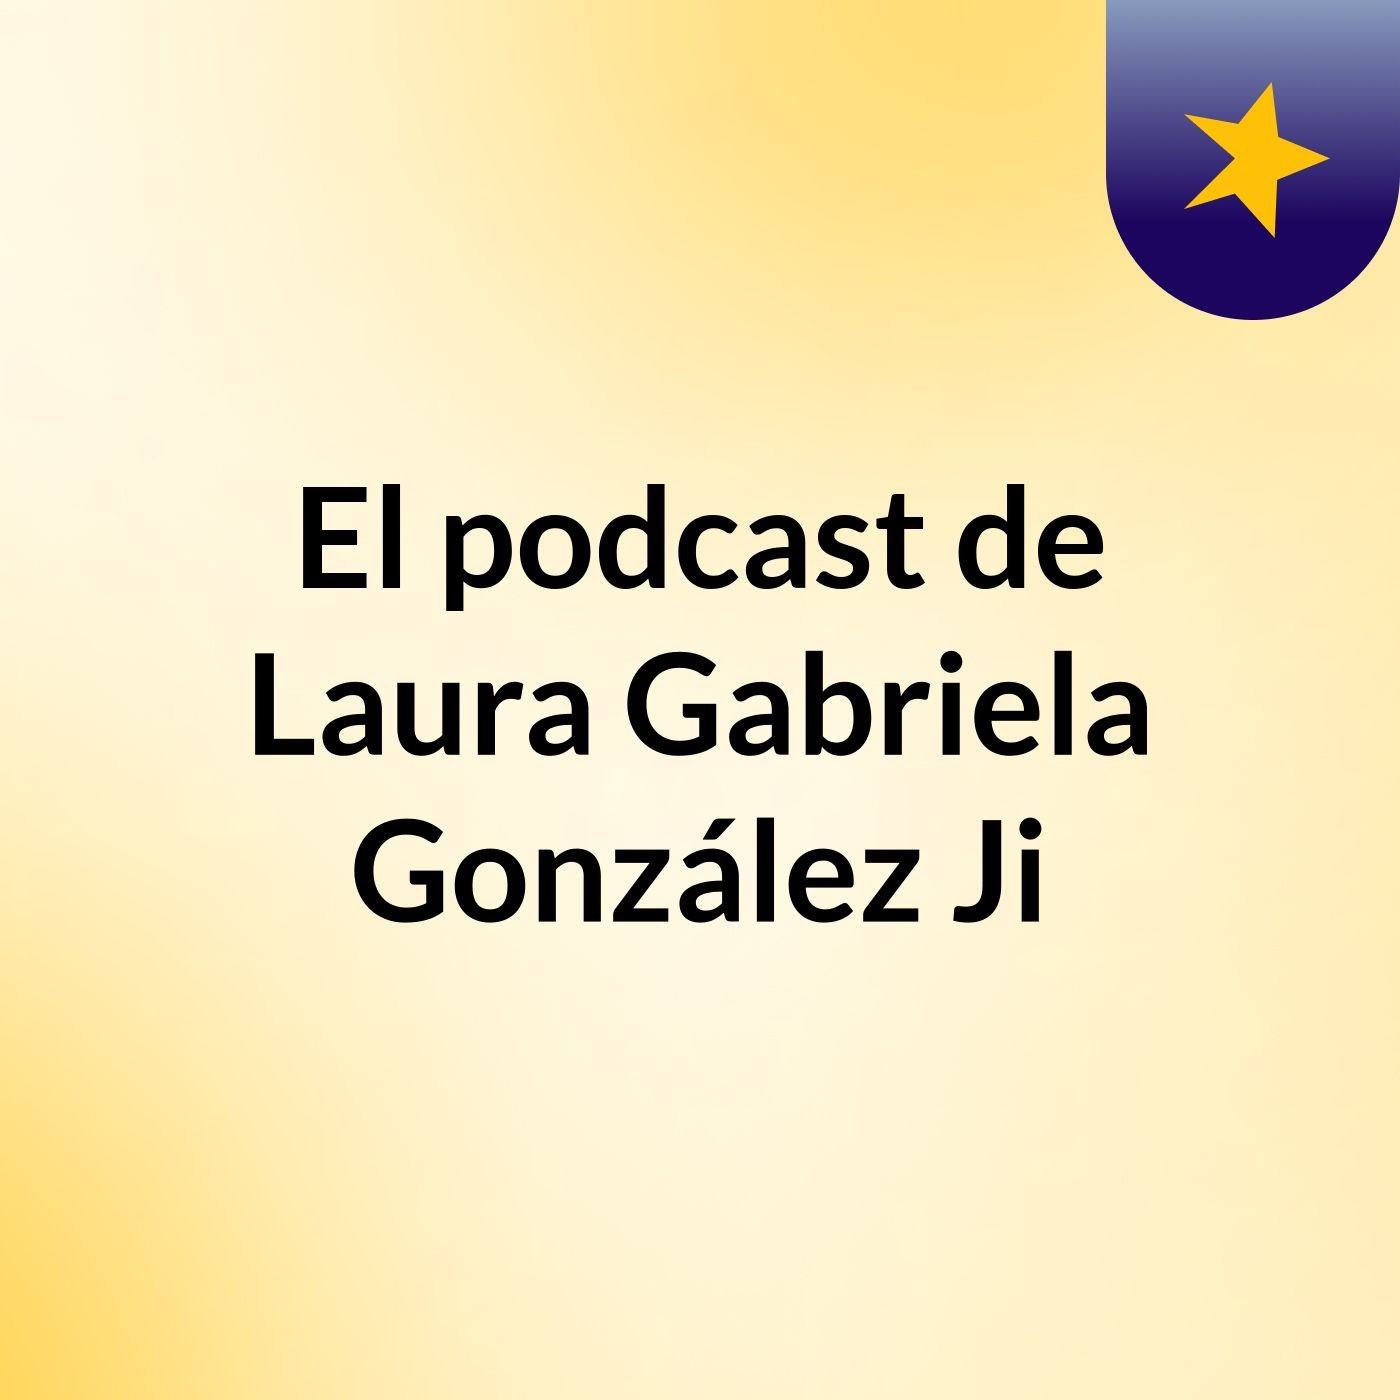 El podcast de Laura Gabriela González Ji